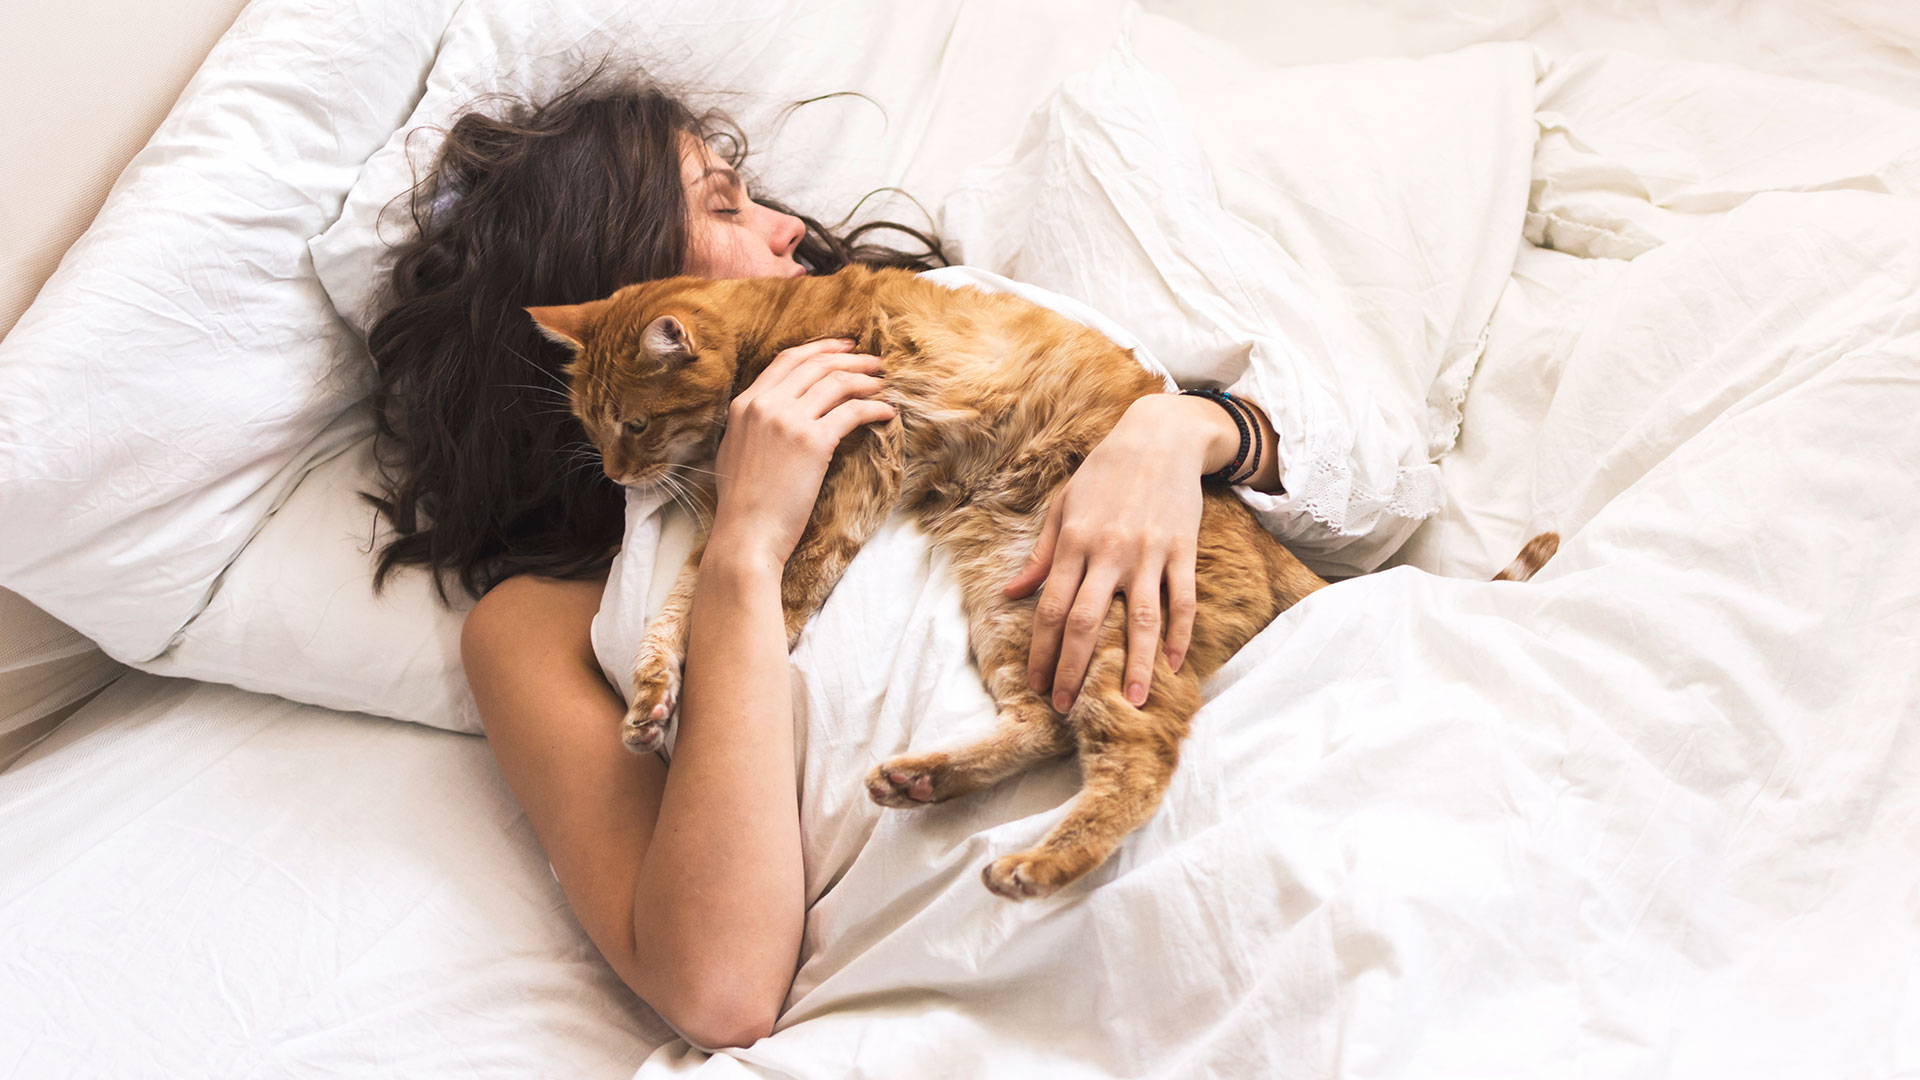 Compartir la cama con los gatos es una práctica que cosecha partidarios y detractores (Getty Images)